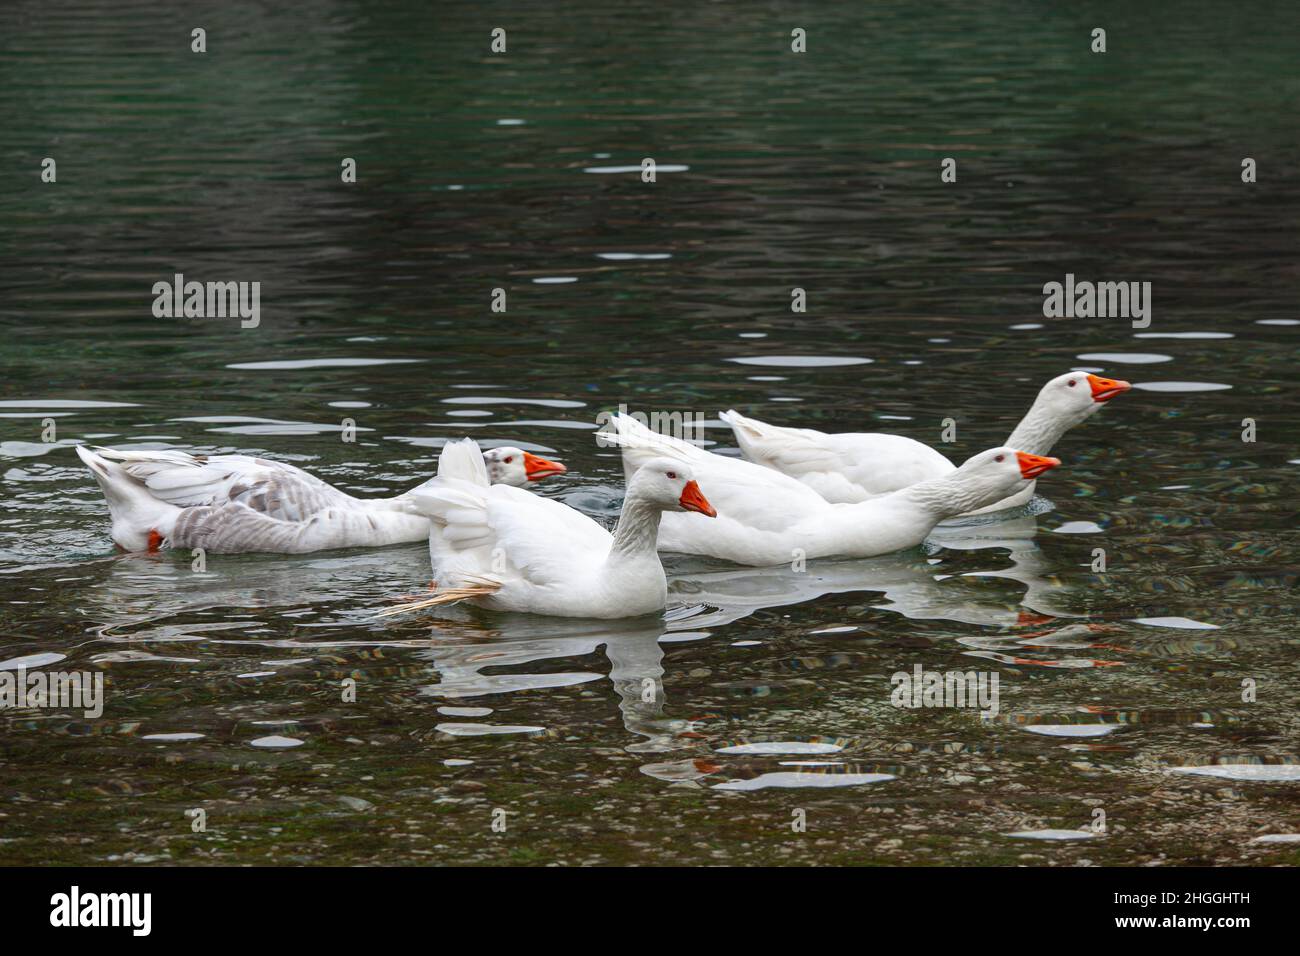 Wildgänse mit weißem Gefieder schwimmen im klaren Wasser des Lake San Domenico. Villalago, Provinz L'Aquila, Abruzzen, Italien, Europa Stockfoto